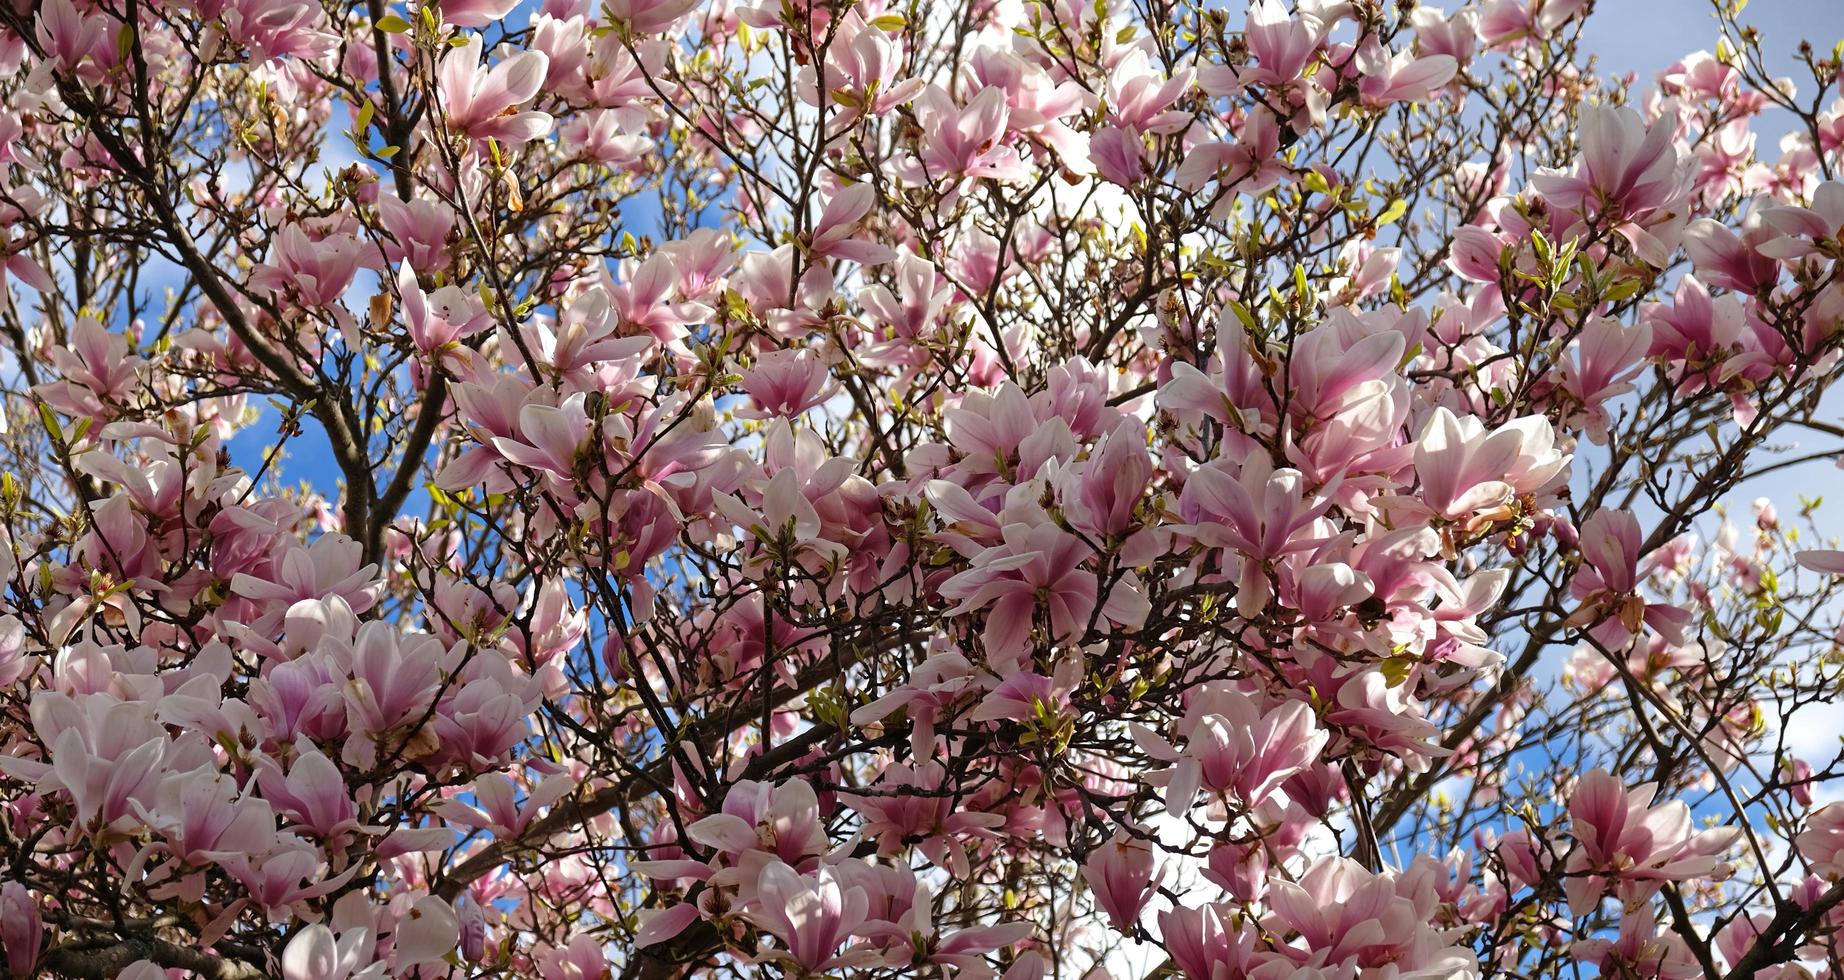 capullos de magnolia rosa, flores sin abrir. árboles en flor a principios  de primavera 14180375 Foto de stock en Vecteezy